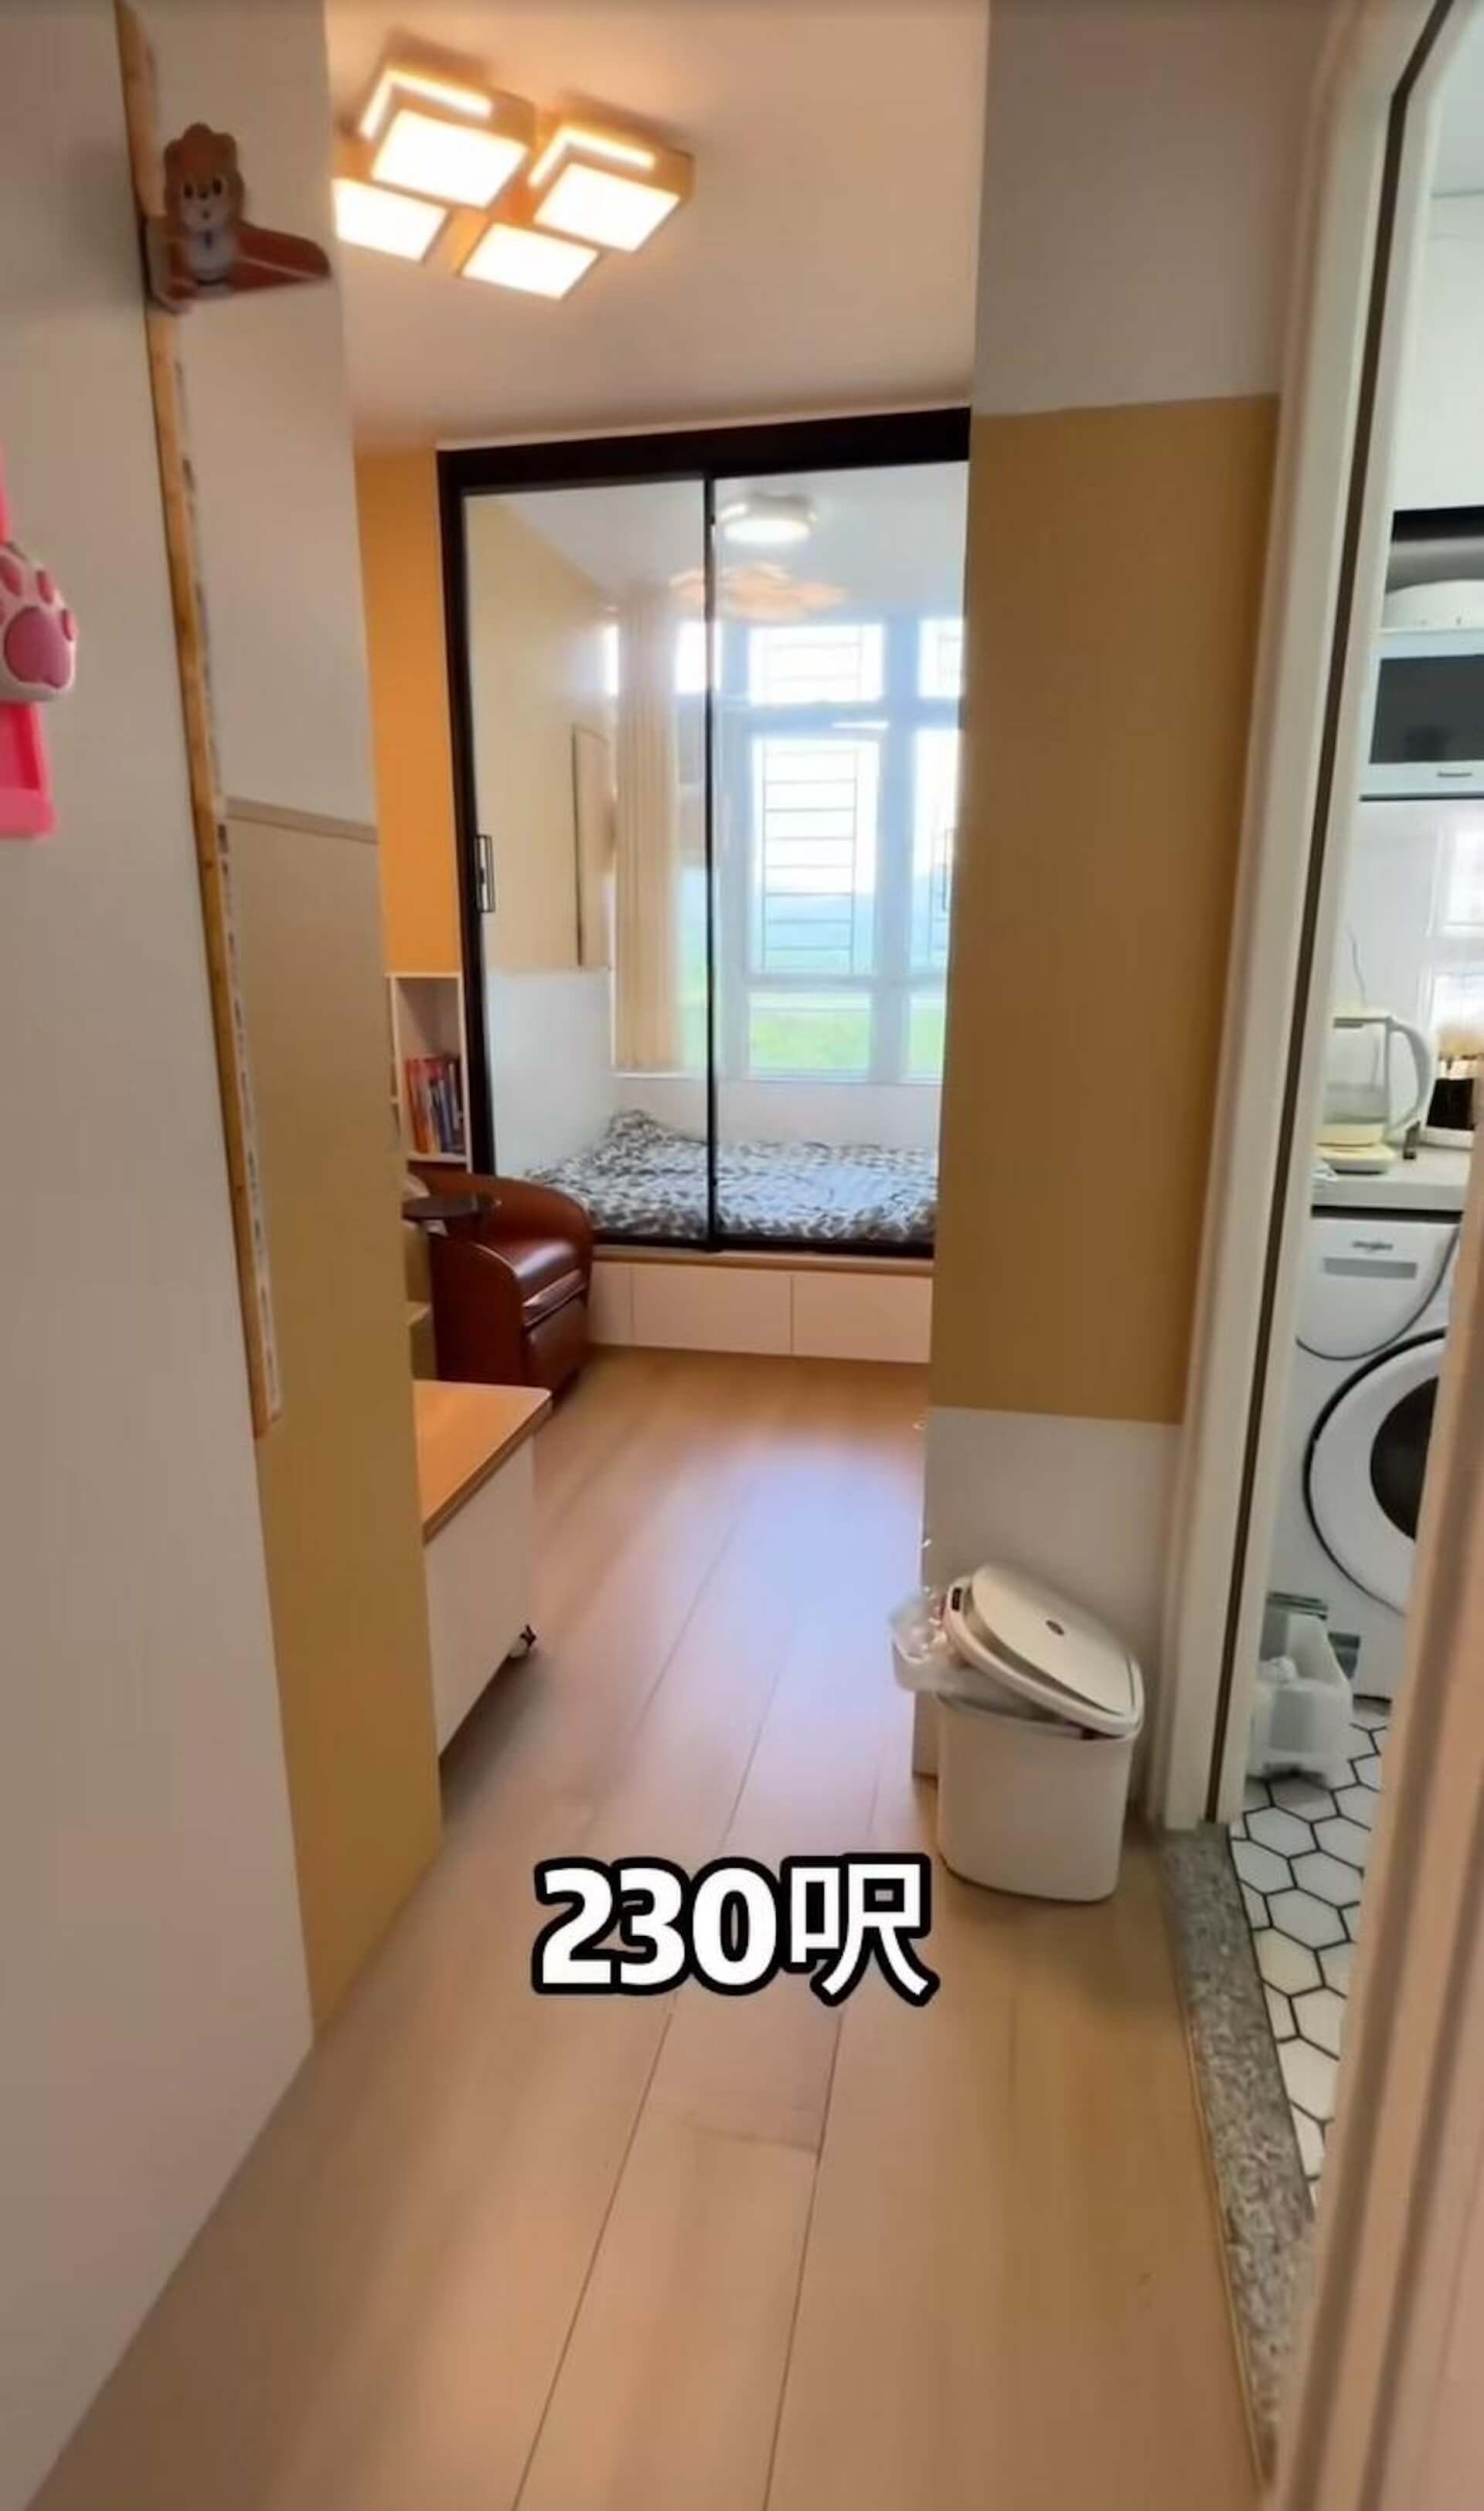 香港月租1450元房子12.jpeg